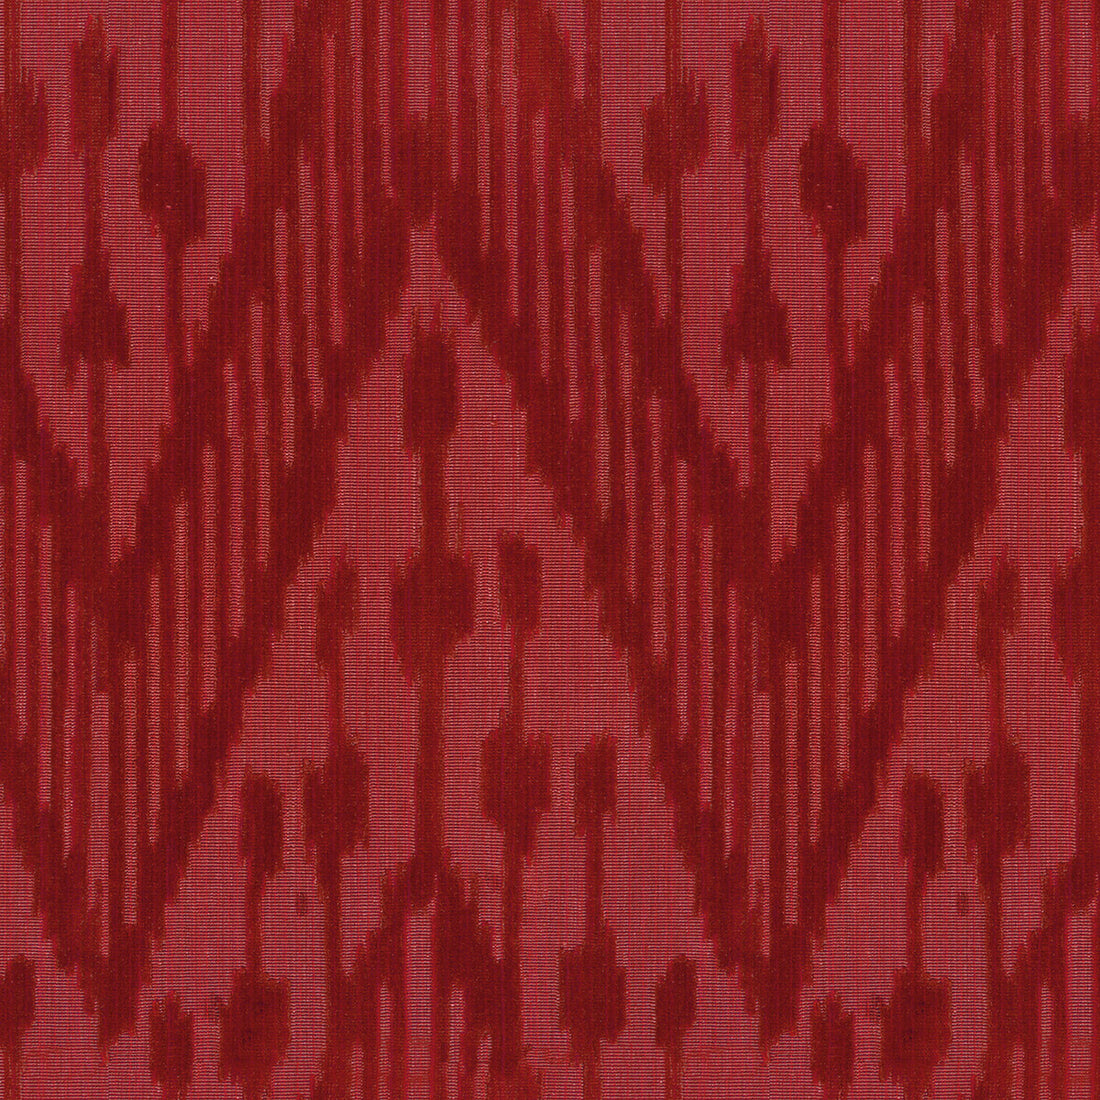 Caravan fabric in red color - pattern 2017101.19.0 - by Lee Jofa in the Oscar De La Renta III collection